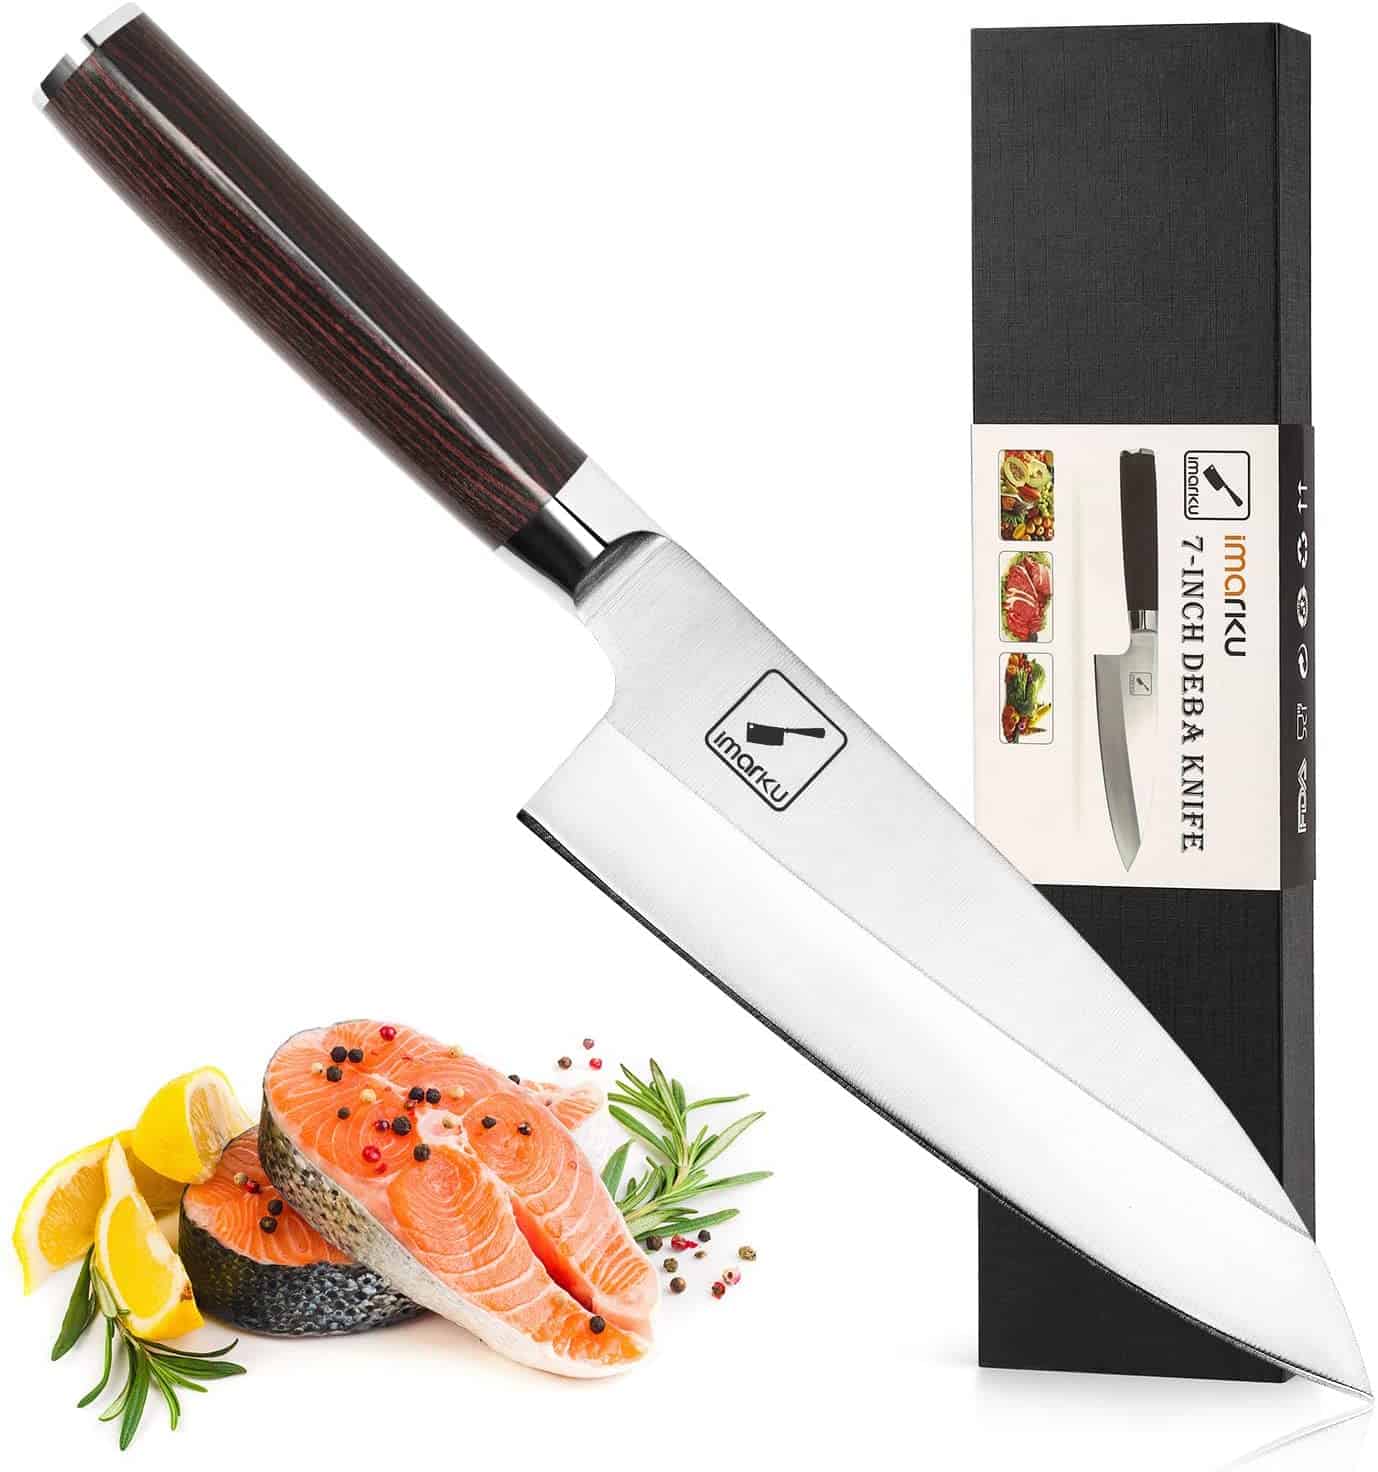 Best value deba knife- imarku 7 inch Fish Fillet Knife